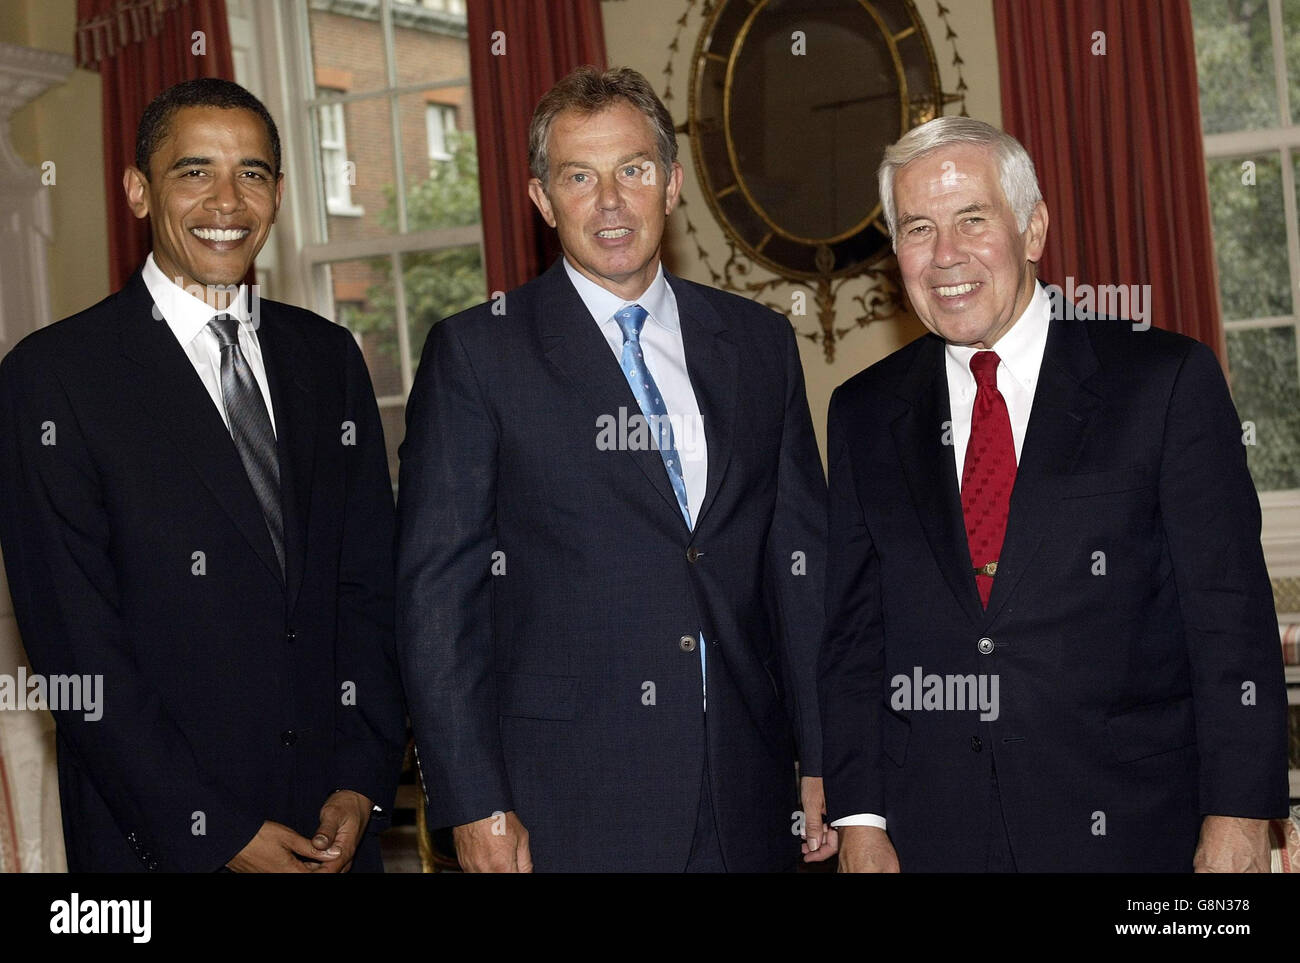 Le Premier ministre britannique Tony Blair (Centre) avec les sénateurs américains (de gauche à droite) Barack Obama et Richard G Lugar, jeudi 1er septembre 2005, lors d'une réunion au 10 Downing Street dans le centre de Londres. APPUYEZ SUR ASSOCIATION photo. Le crédit photo devrait se lire comme suit : Colin Davey/PA/Daily Mail/NPA Rota Banque D'Images